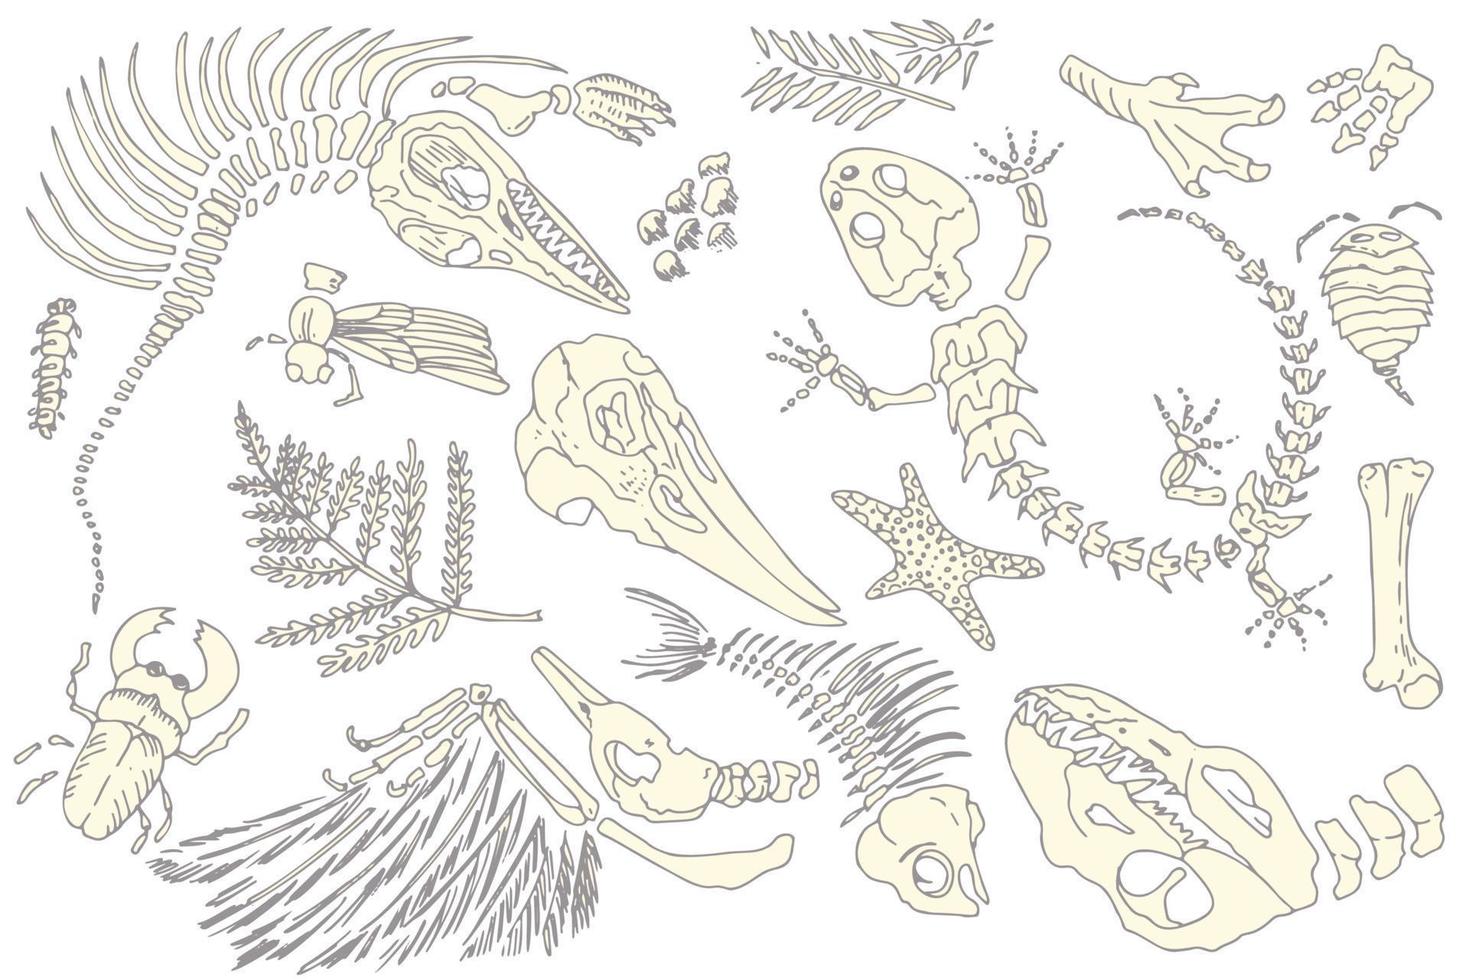 satz von silhouetten prägt skelette von prähistorischen tieren, insekten und pflanzen. graue archäologie, bruchgesteinsfragmente, schuttbrocken. satz realistischer handgezeichneter kunst. Vektor-Illustration vektor